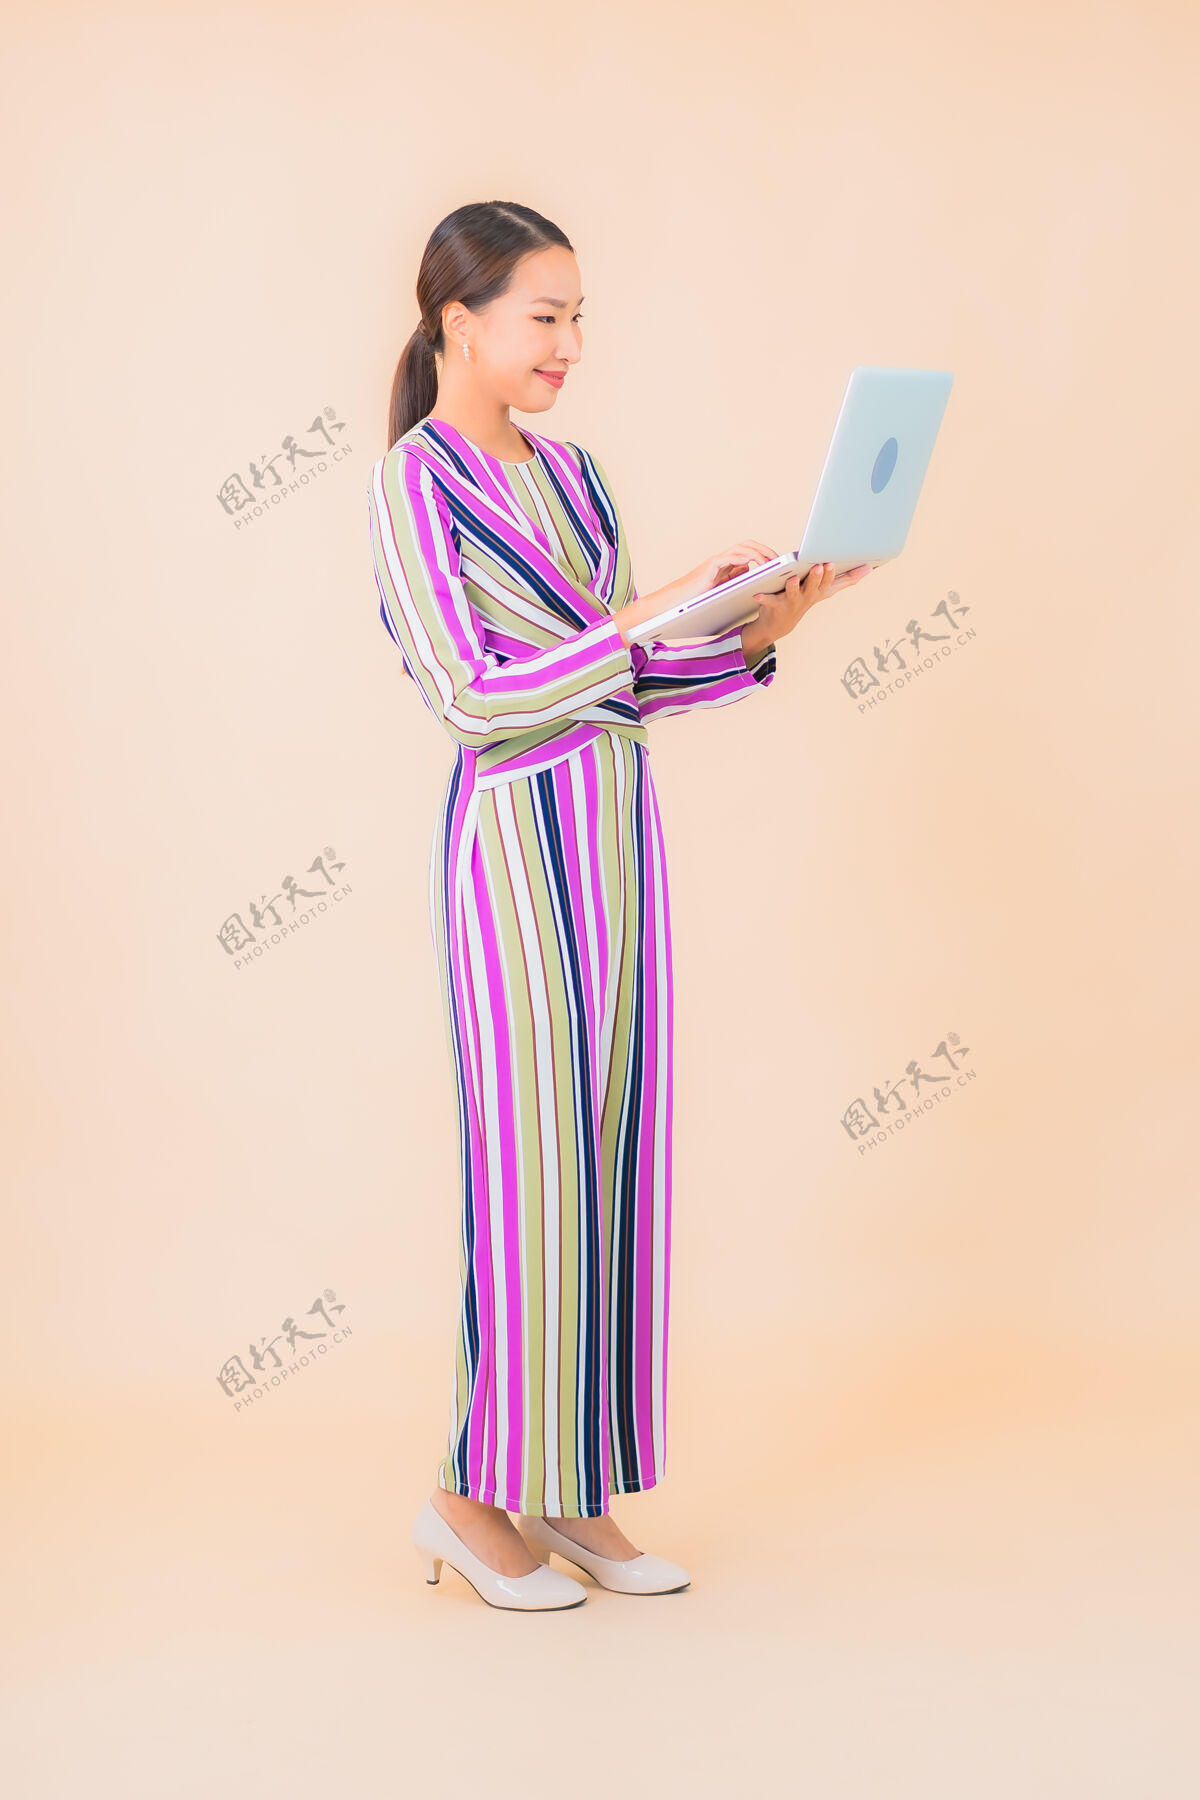 中国人用彩色笔记本电脑描绘美丽的亚洲年轻女子无线数据工作